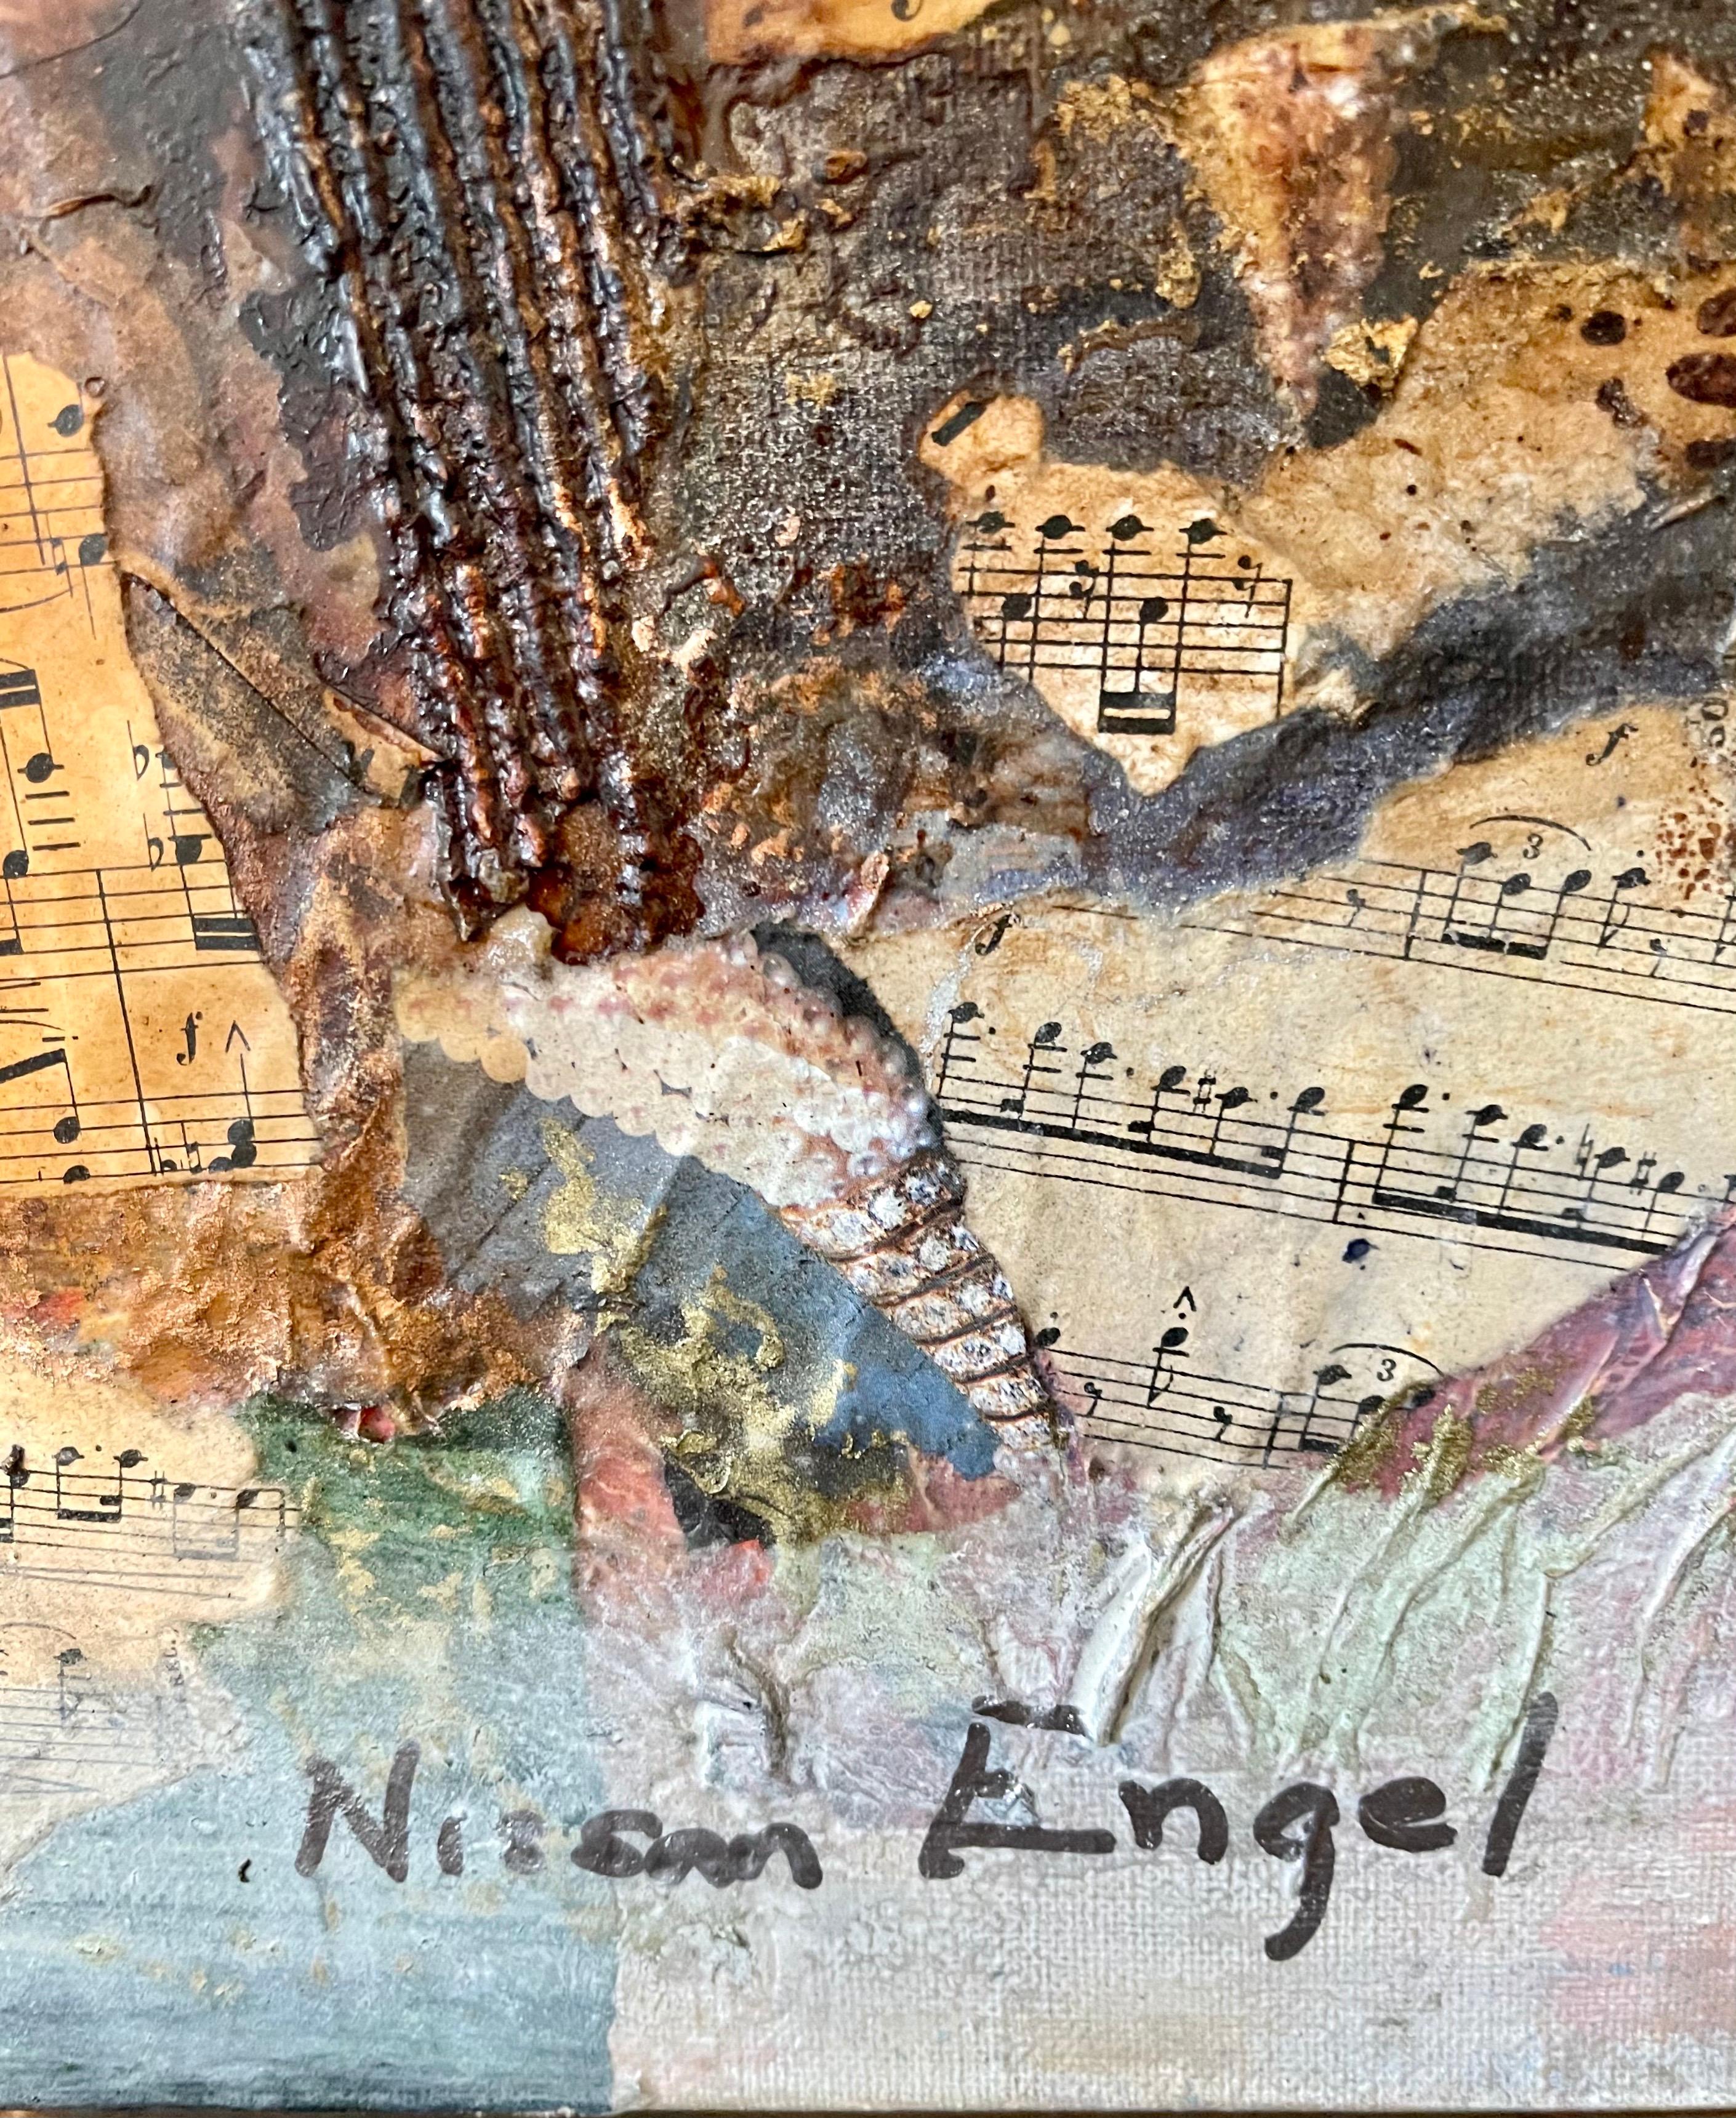 Composition abstraite de collages français - Peinture en dentelle et notes de musique - Painting de Nissan Engel